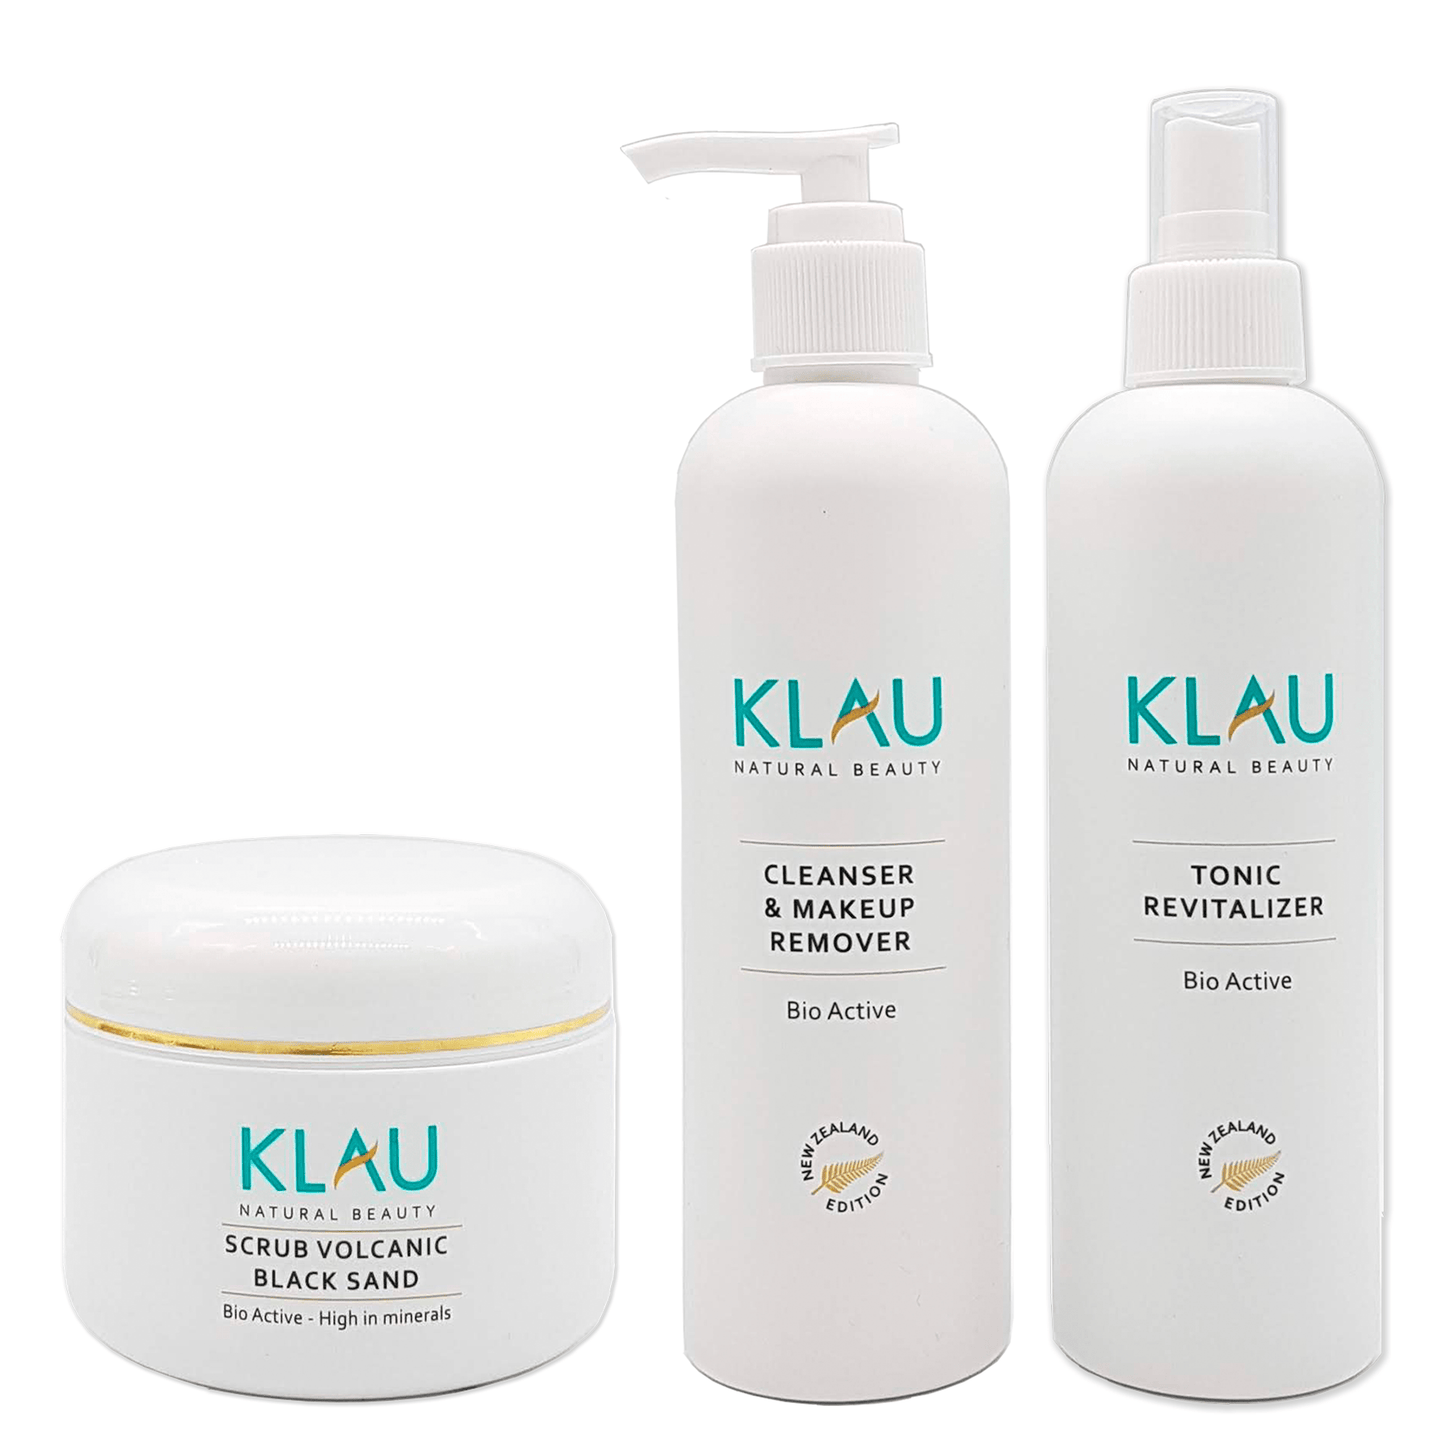 Crea tu Box - Elige tus 2 productos favoritos KLAU